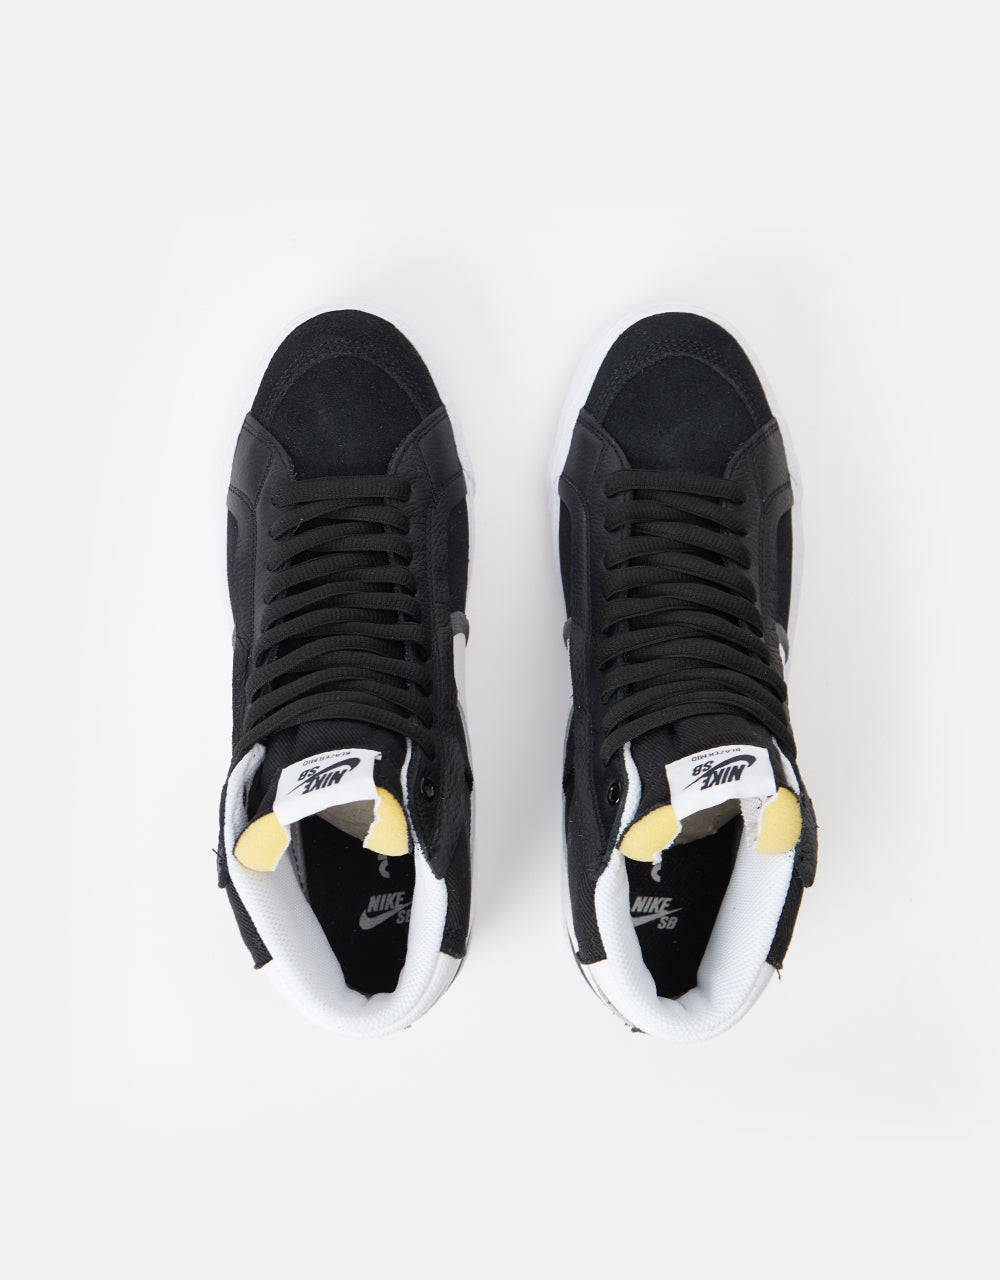 Nike SB Zoom Blazer Mid Premium Plus Skate Shoes - Black/White